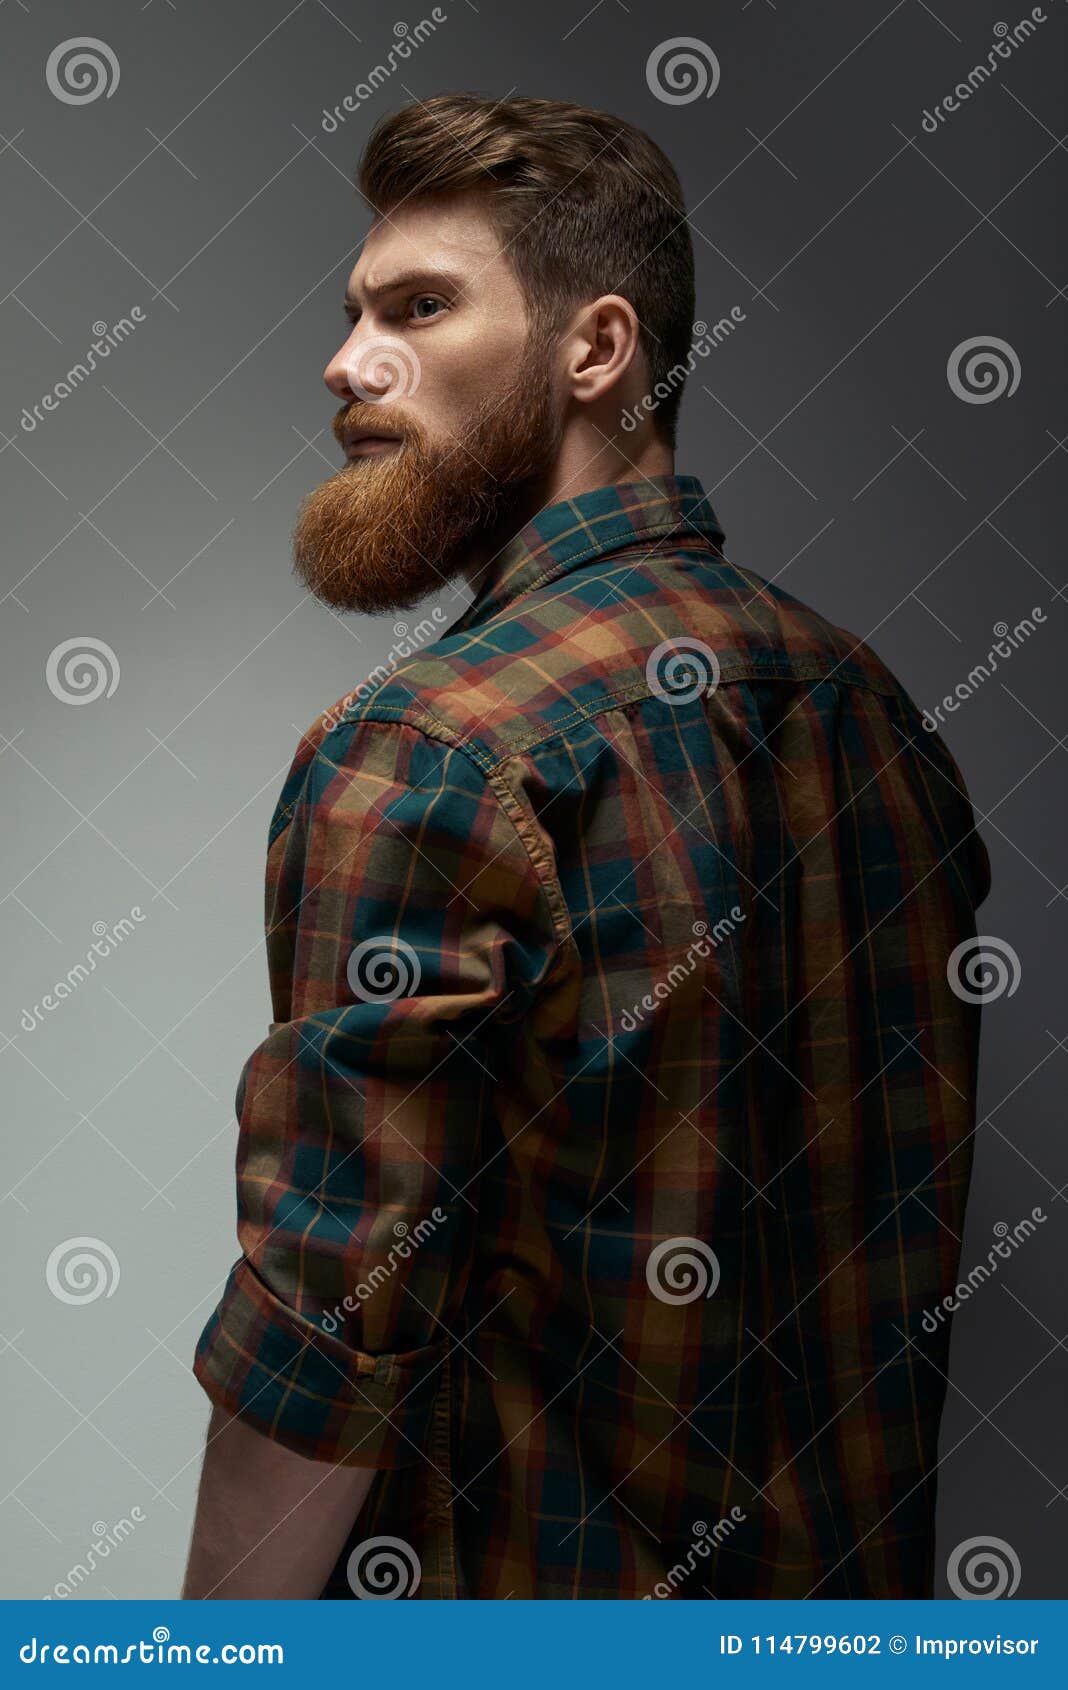 Ritratto Di Un Uomo Con La Barba E L Acconciatura Moderna Fotografia Stock Immagine Di Haircut Barbershop